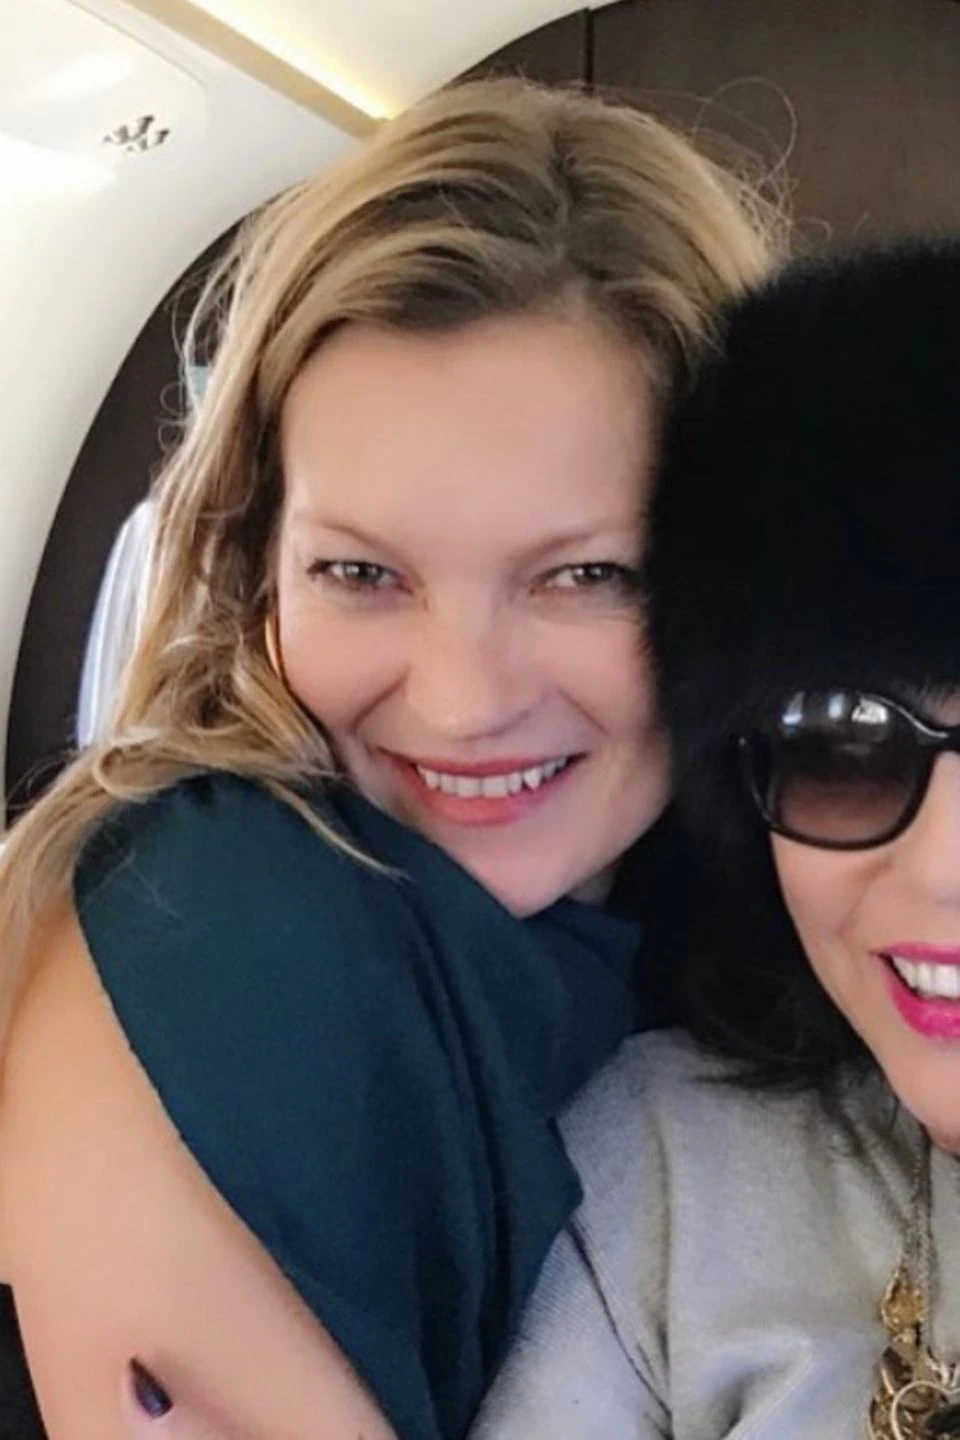 Kate Moss und Joan Collins   "Schaut wen ich im Flugzeug getroffen habe", postet Joan Collins auf ihrem Instagram Account. Die britische Schauspielerin trifft auf das Topmodel Kate Moss und die beiden Frauen scheinen sich sehr zu freuen. 